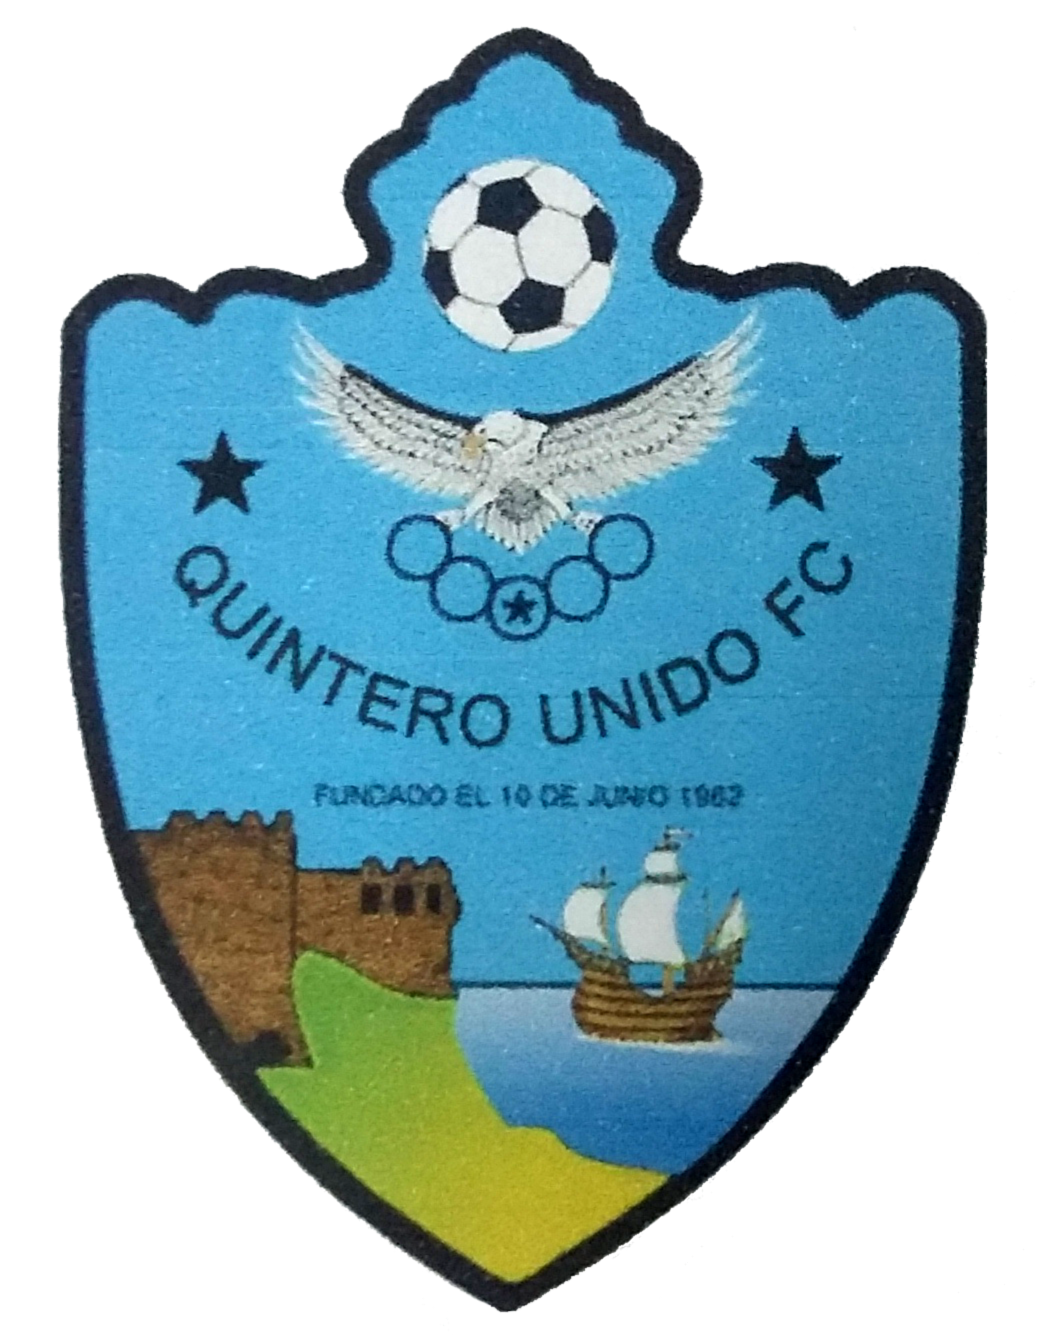 Wappen CD Quintero Unido  77540